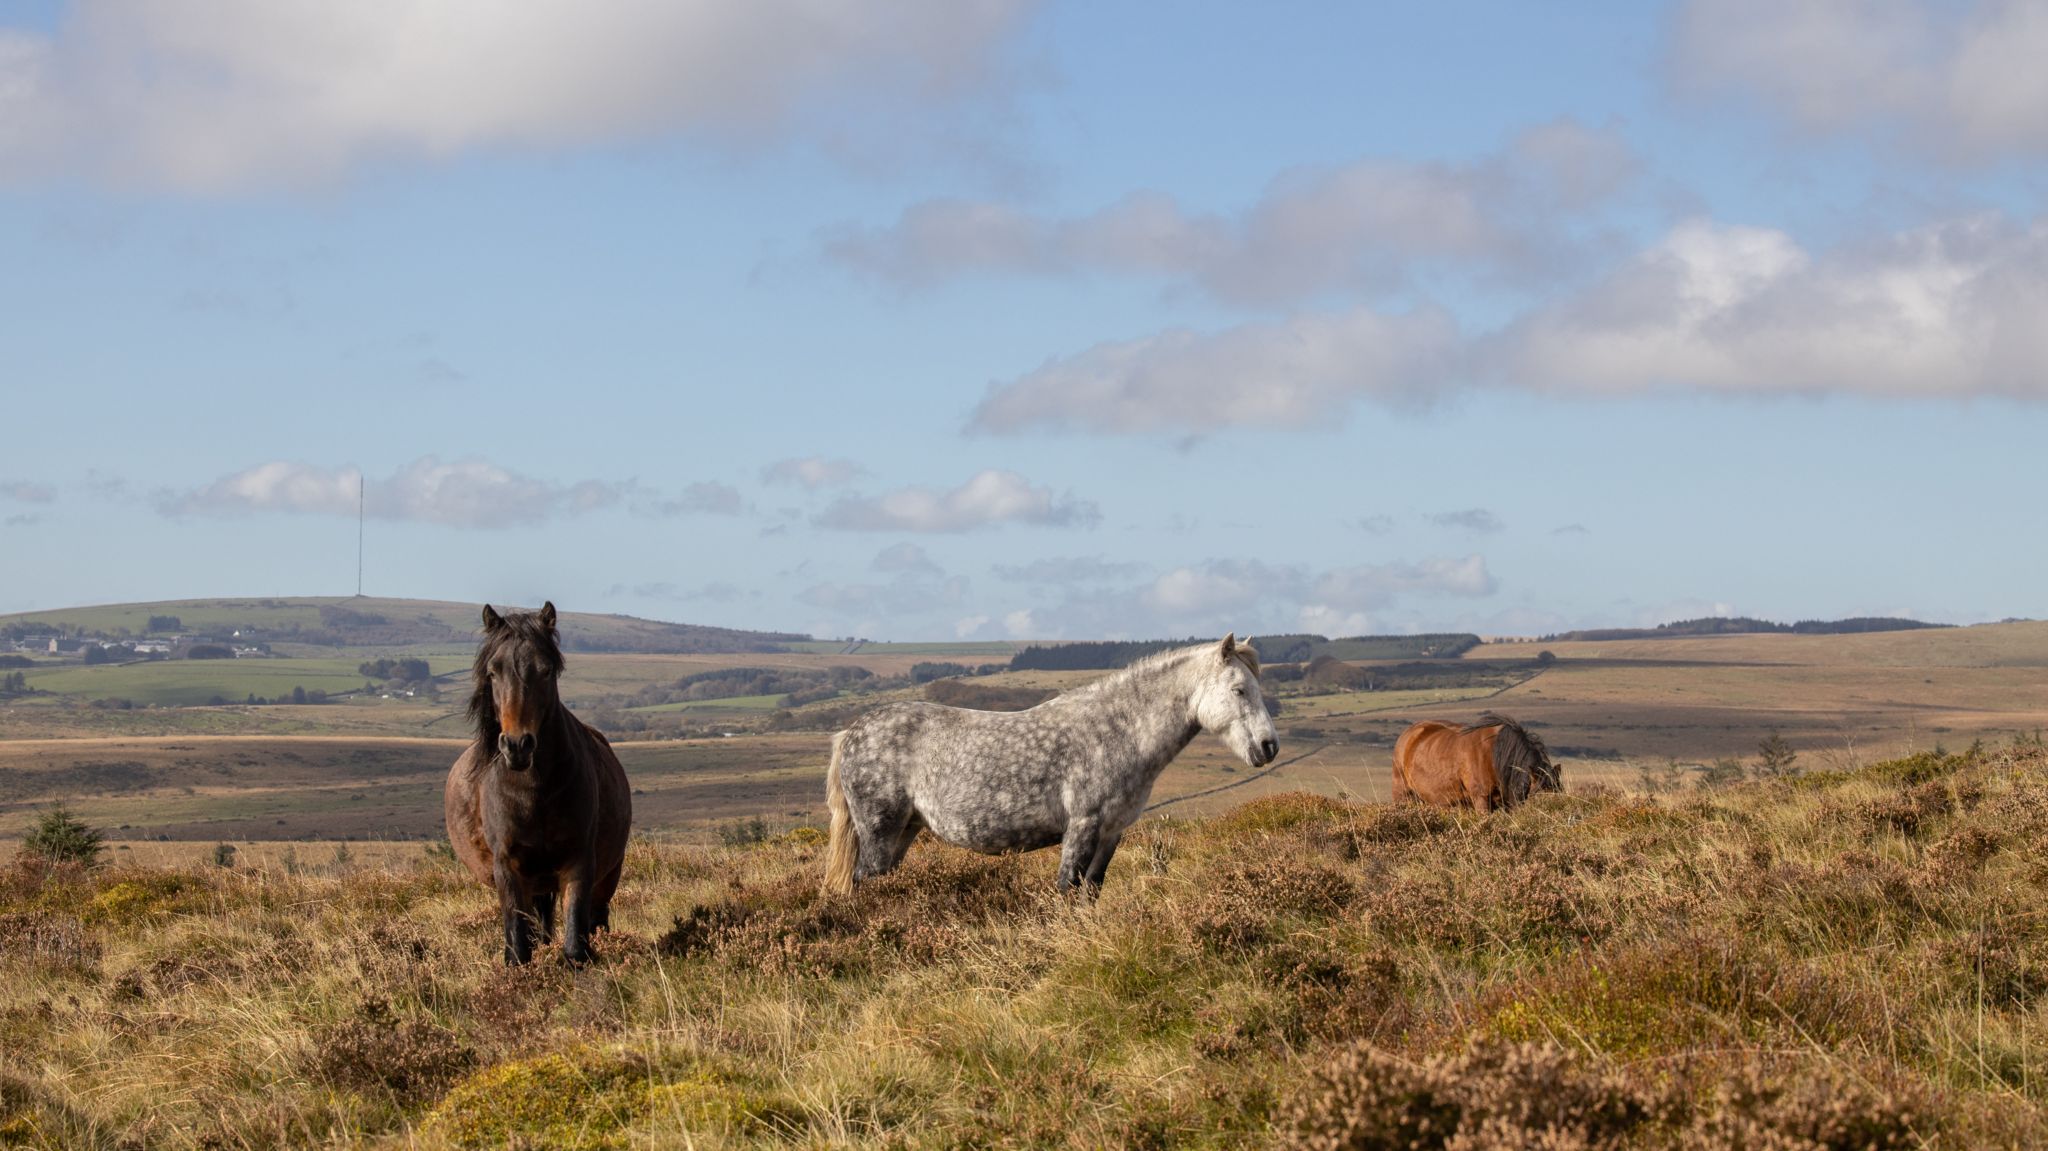 Dartmoor pony herd to increase to help restore moorland - BBC News